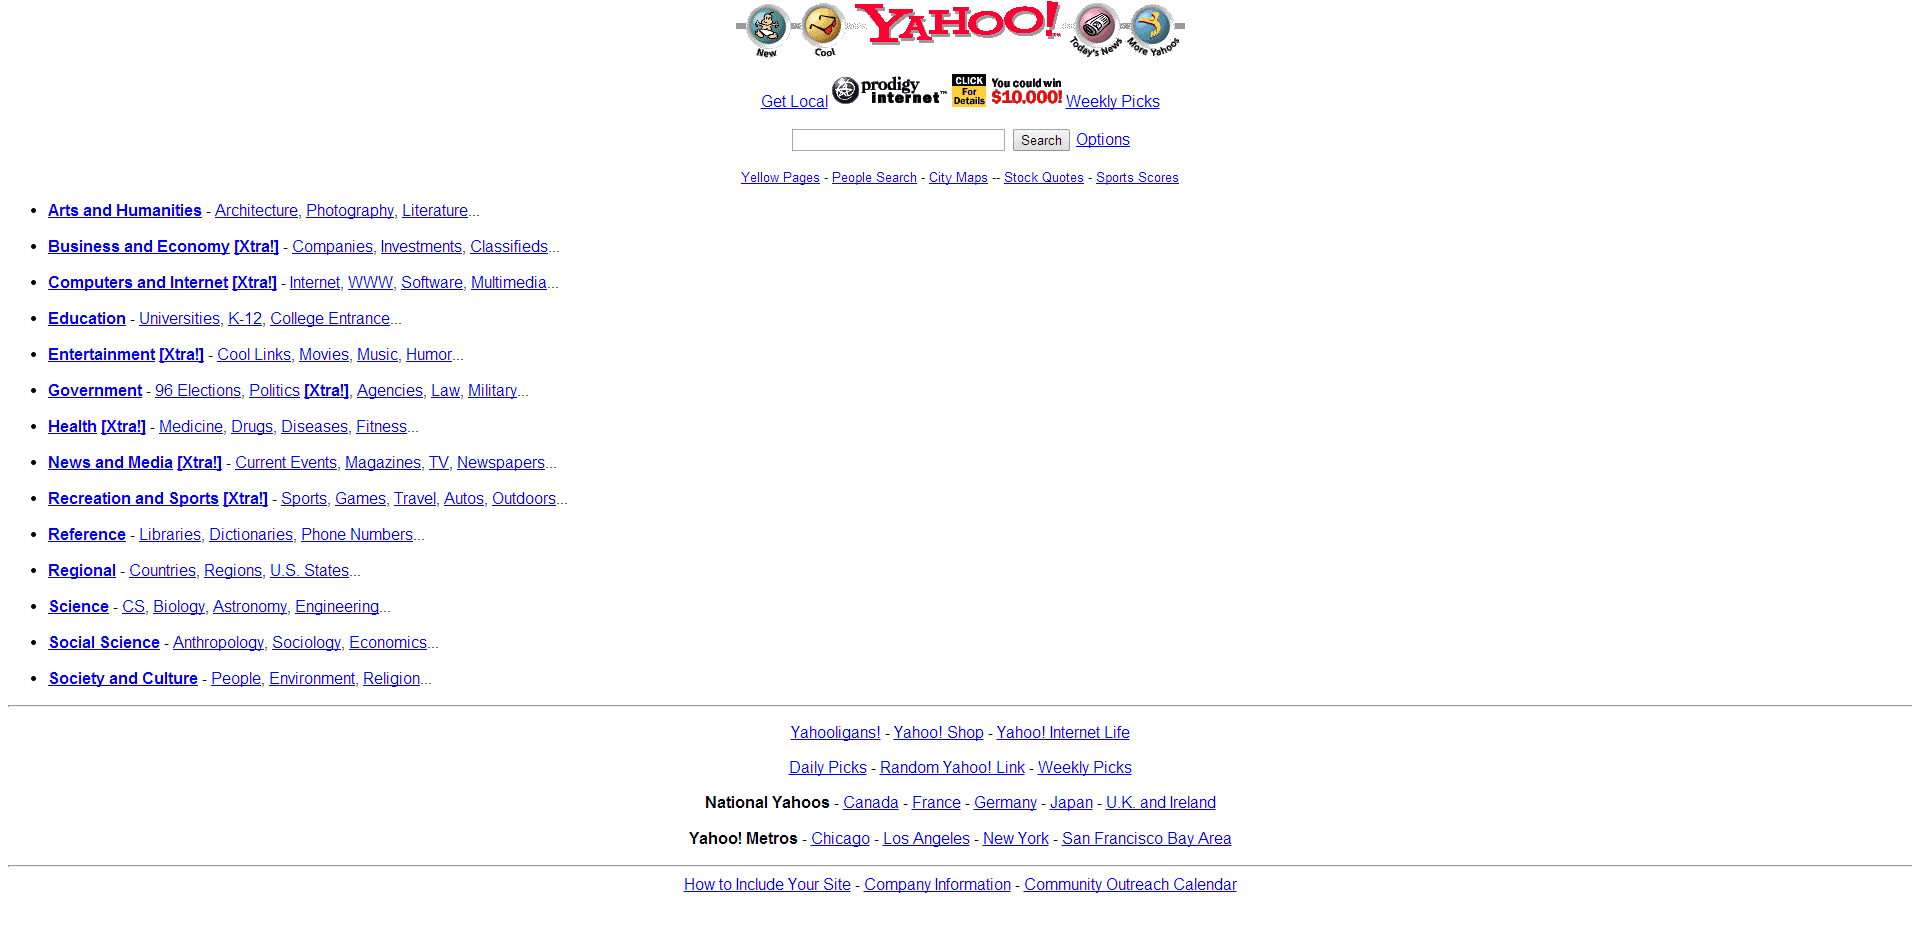 L'annuaire Yahoo en 1998